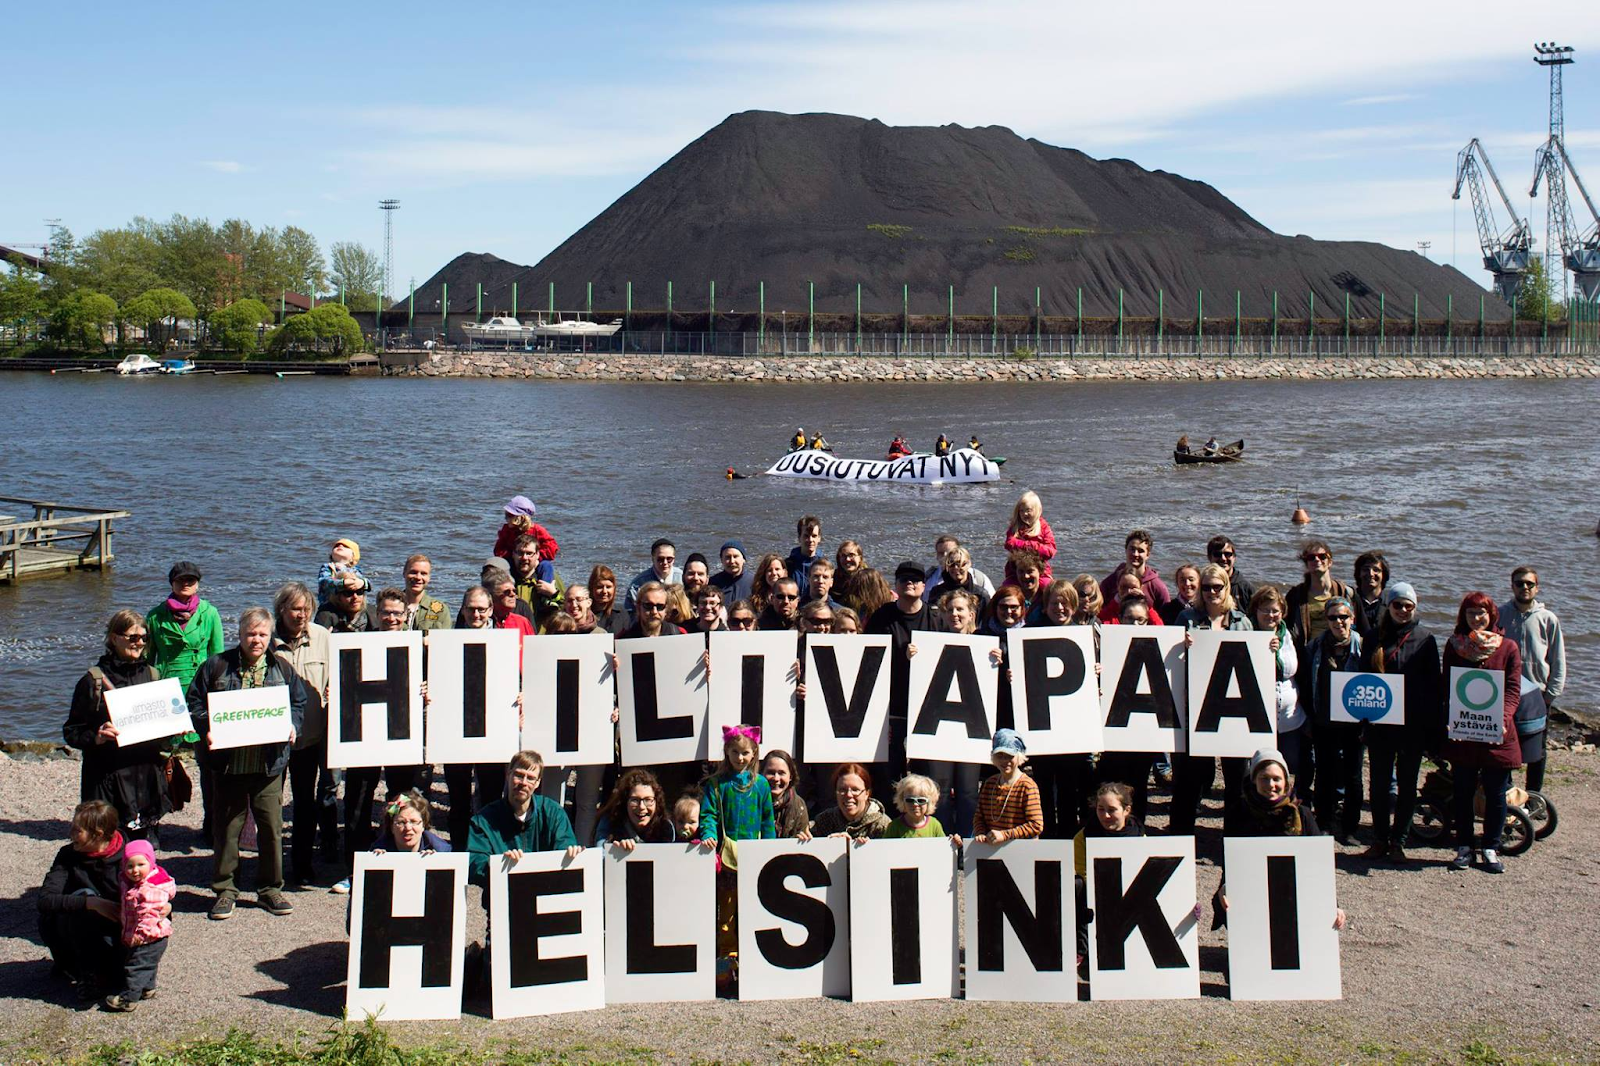 Mielenosoittajia Hanasaaren hiilivuoren edustalla. Mielenosoittajilla on kylttejä, joissa lukee mm. "uusiutuvat nyt" sekä "Hiilivapaa Helsinki".